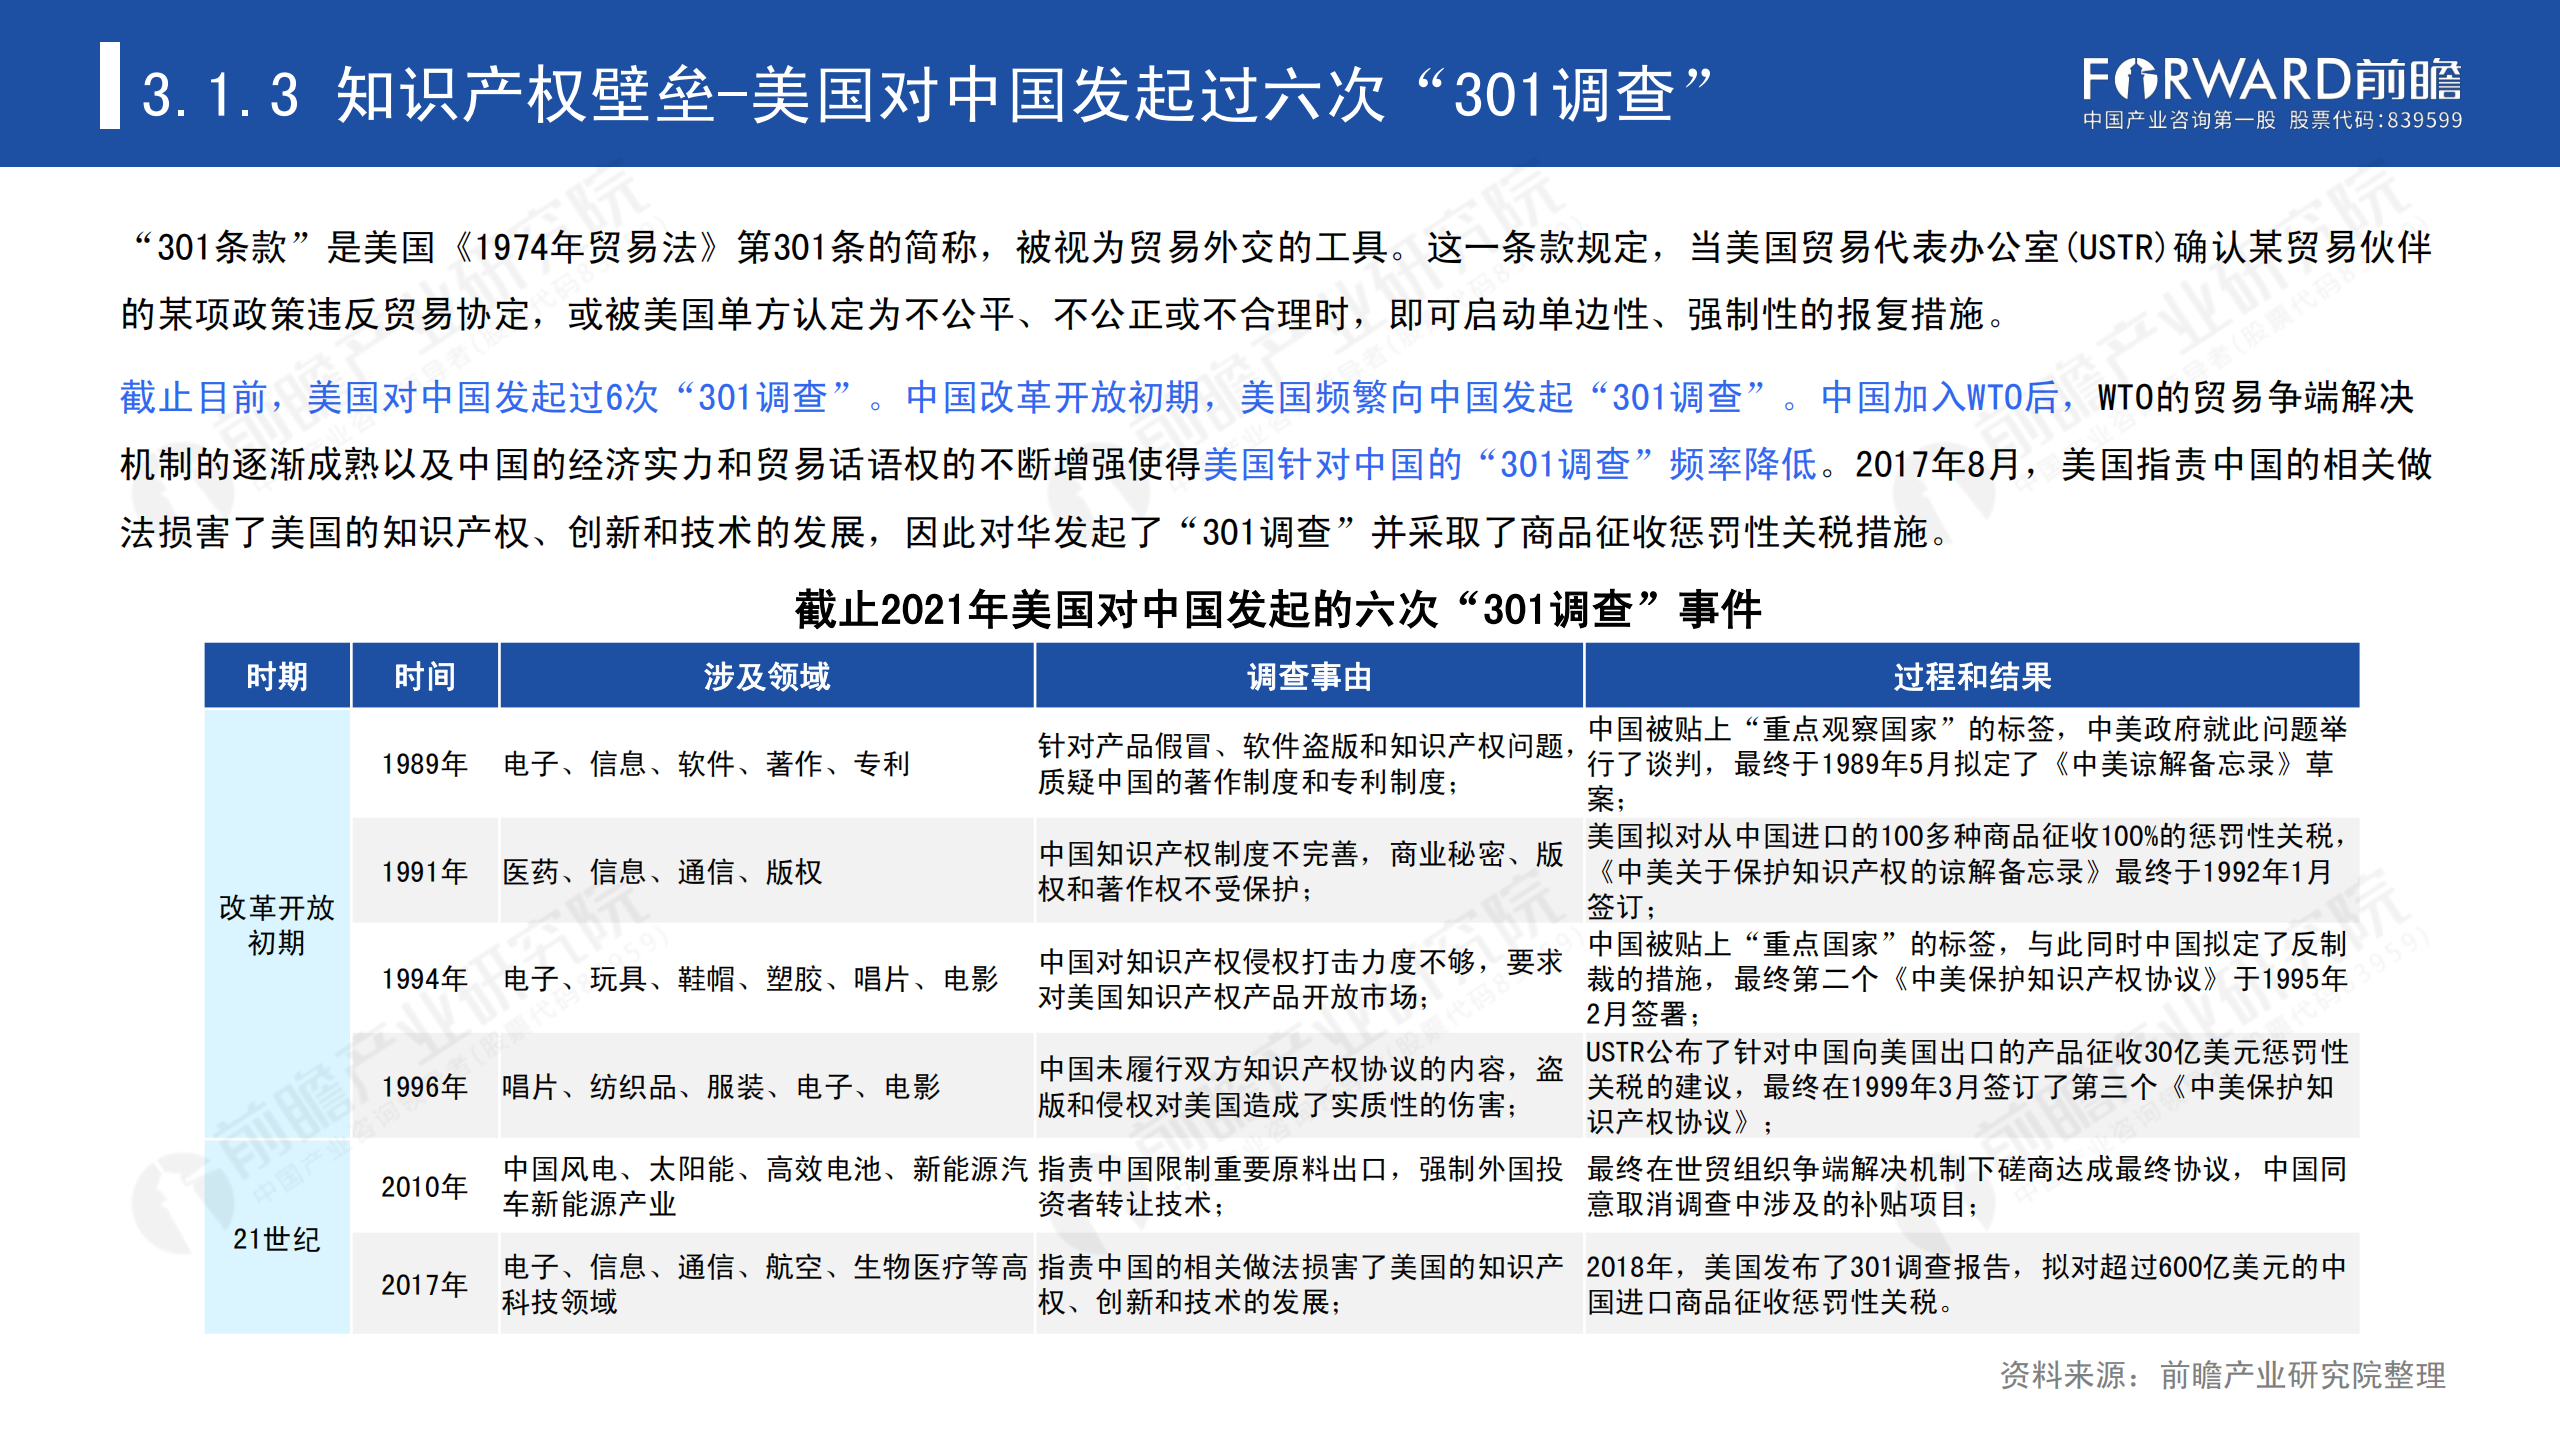 2020年中国贸易摩擦全景回顾-前瞻-2021-64页_31.png